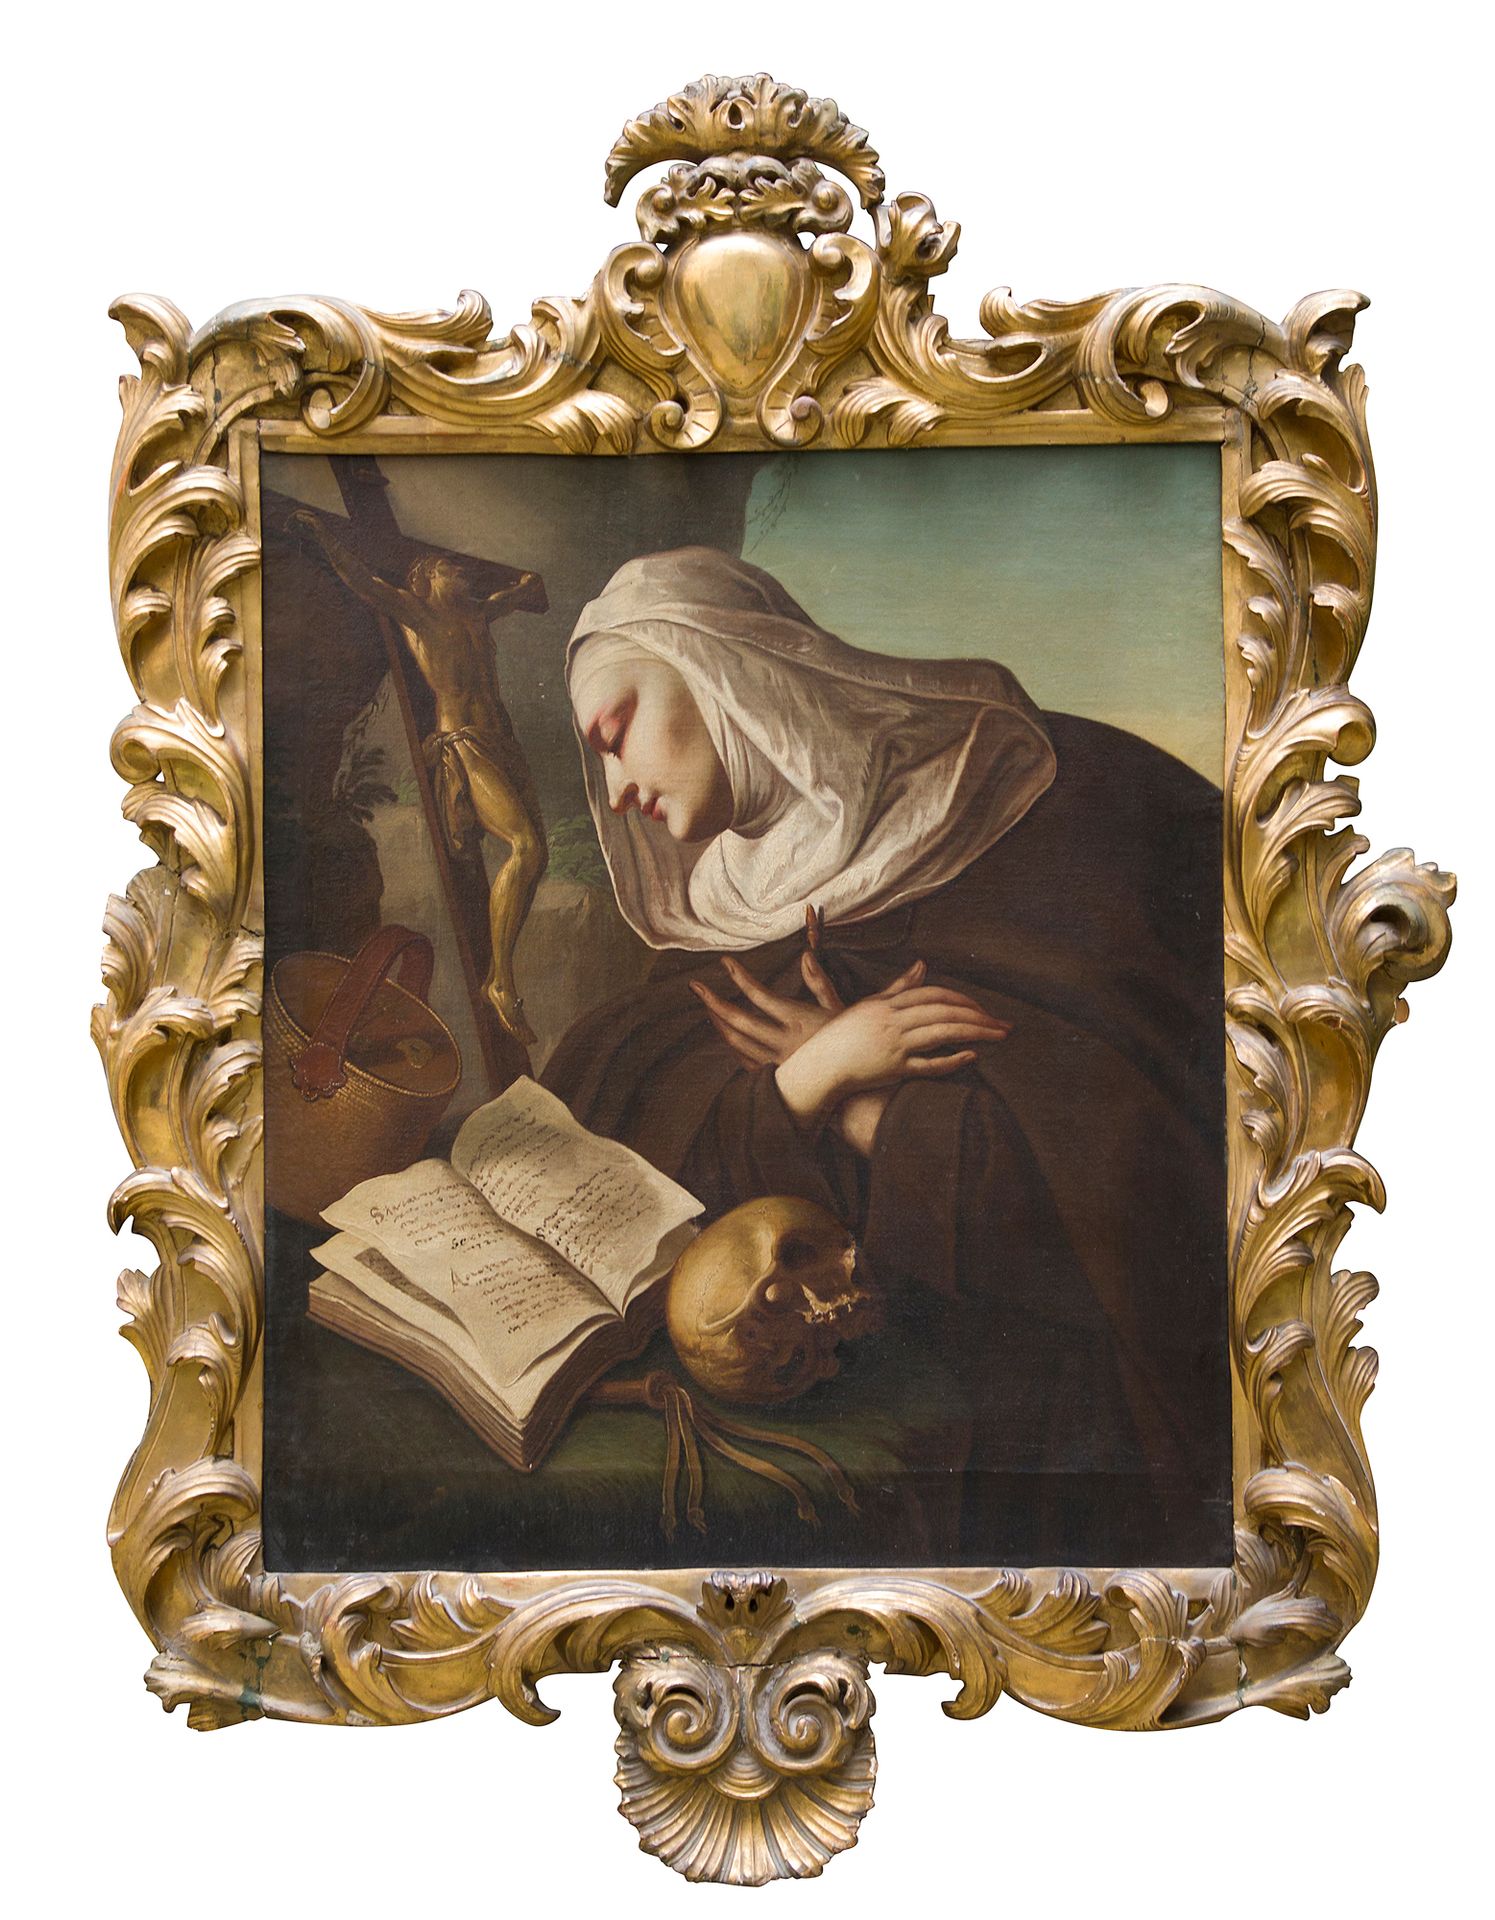 Null 18世纪初的维尼特画派

尼姑在十字架前敬拜

布面油画

98 x 83.5 cm



木质和镀金灰泥的时期框架，装饰有罗盖尔、叶子和卡图。